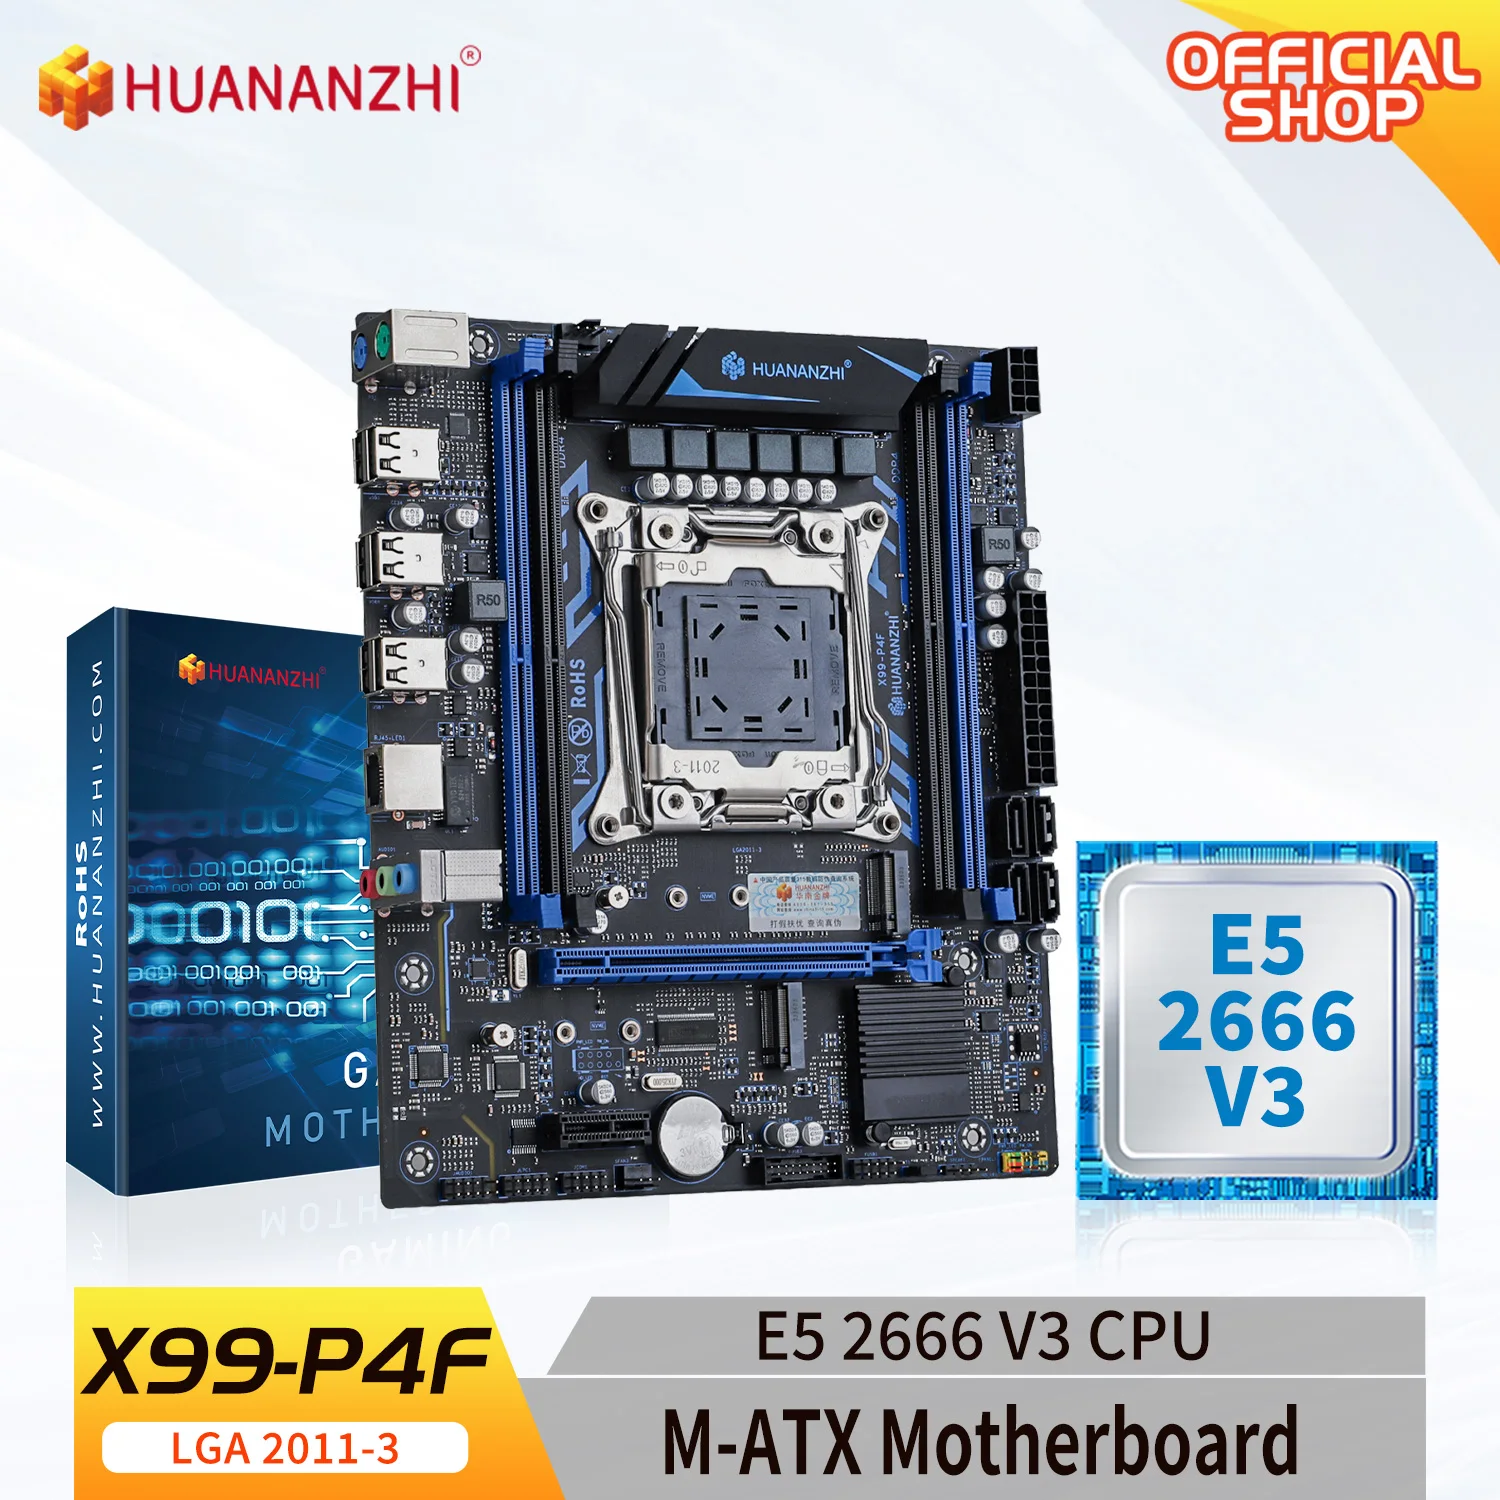 HUANANZHI X99 P4F LGA 2011-3 XEON X99 материнская плата с Intel E5 2666 V3 поддержка DDR4 RECC память комбинированный комплект NVME SATA